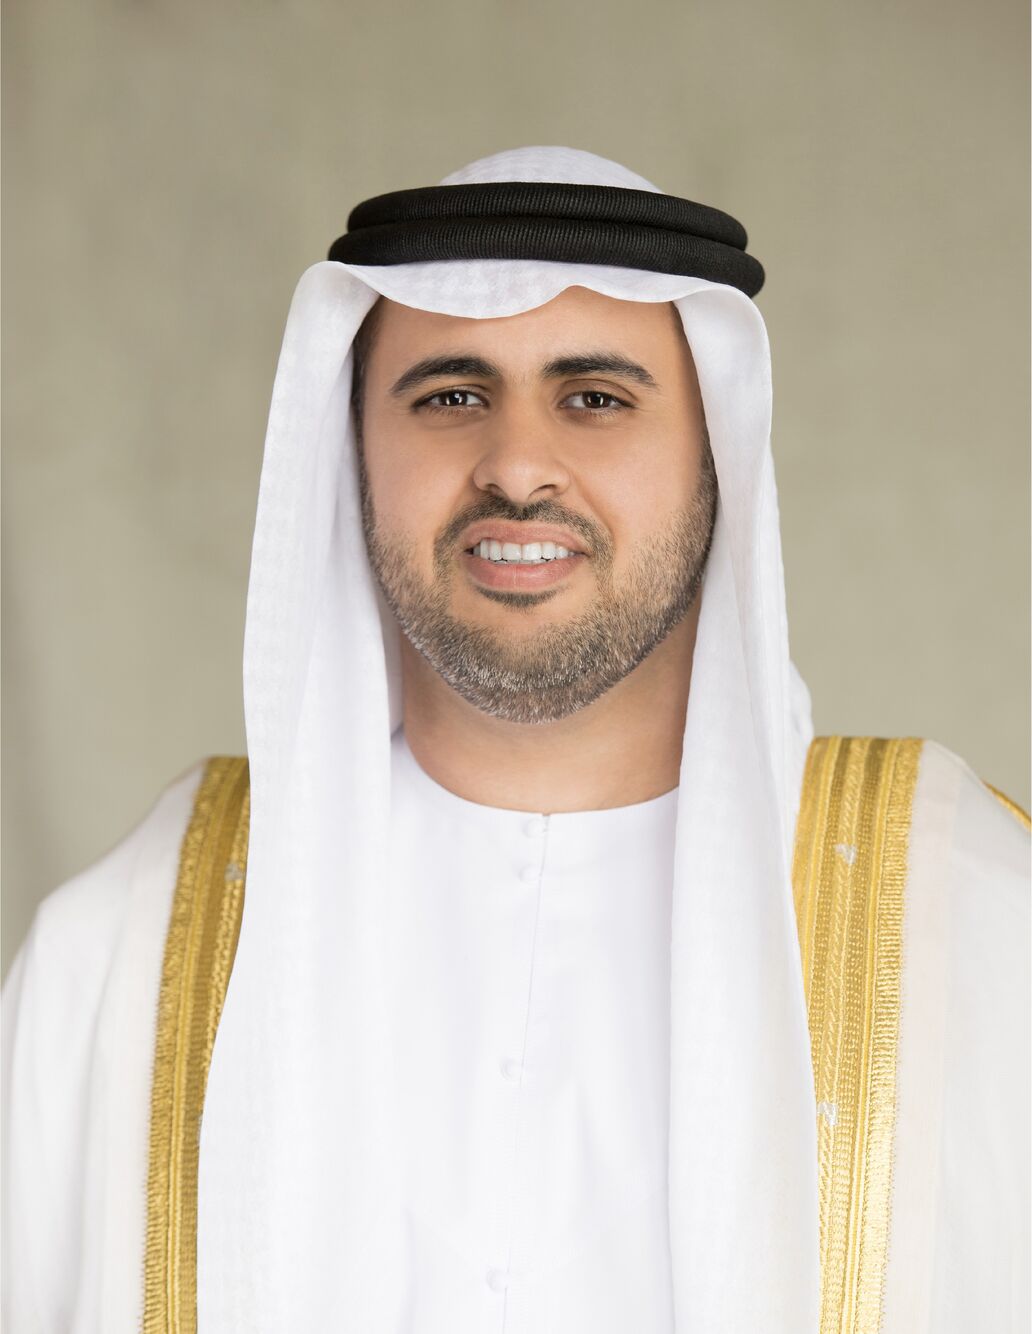 Theyab bin Mohamed bin Zayed Al Nahyan